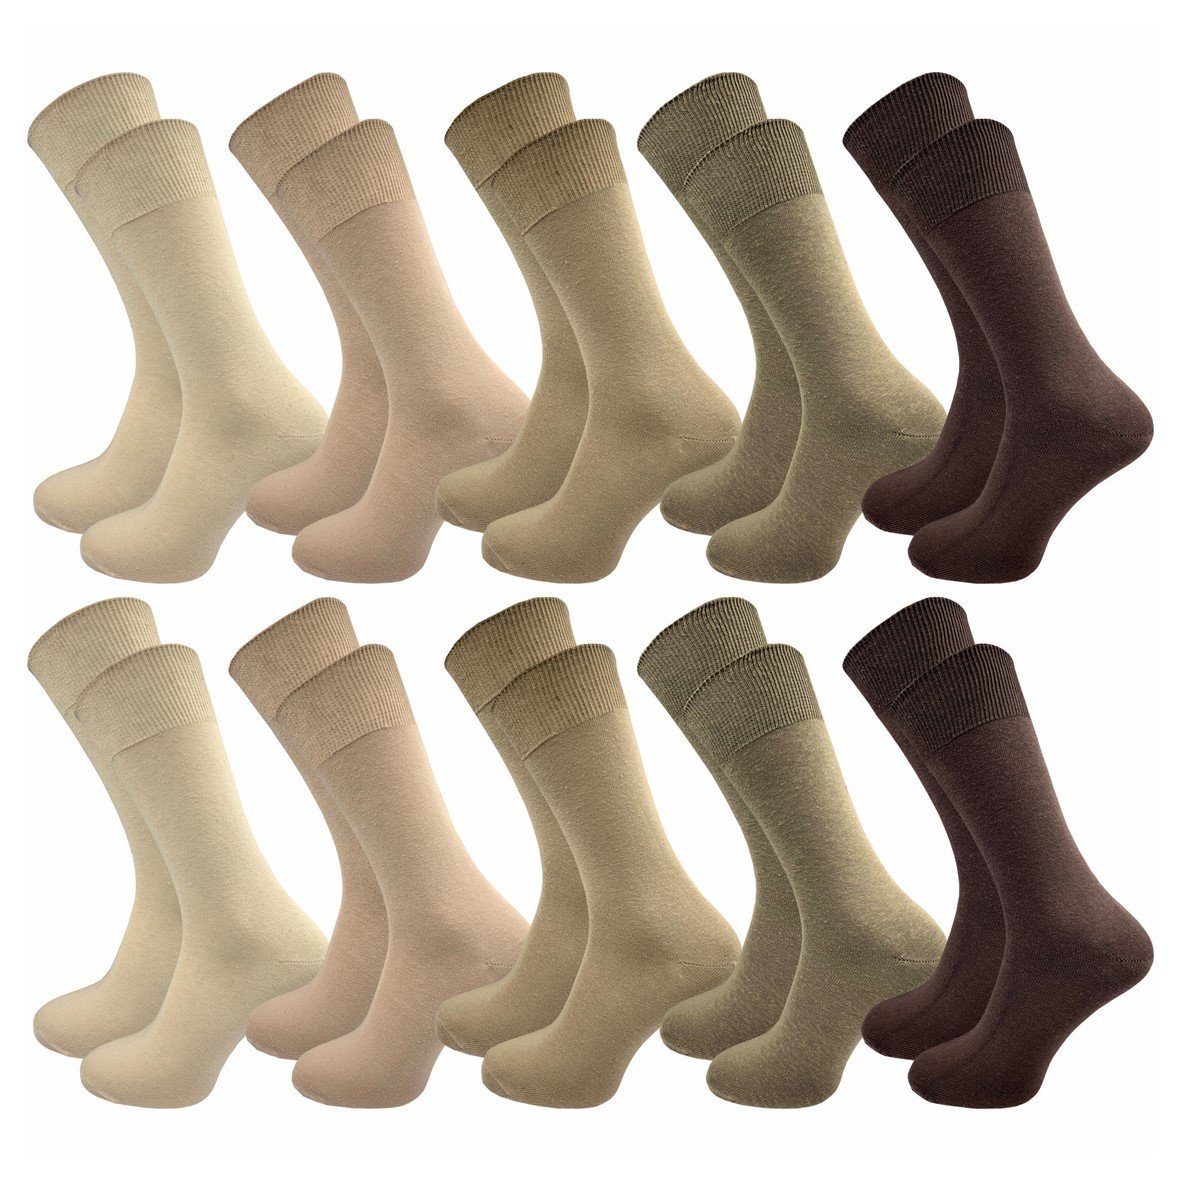 GAWILO Basicsocken aus 100% Baumwolle für Herren in 3 Farbkombinationen ohne Gummidruck (10 Paar) natur-, blau- & dunkle Töne - ideale Ergänzung Ihres Socken Sortiments natur Töne